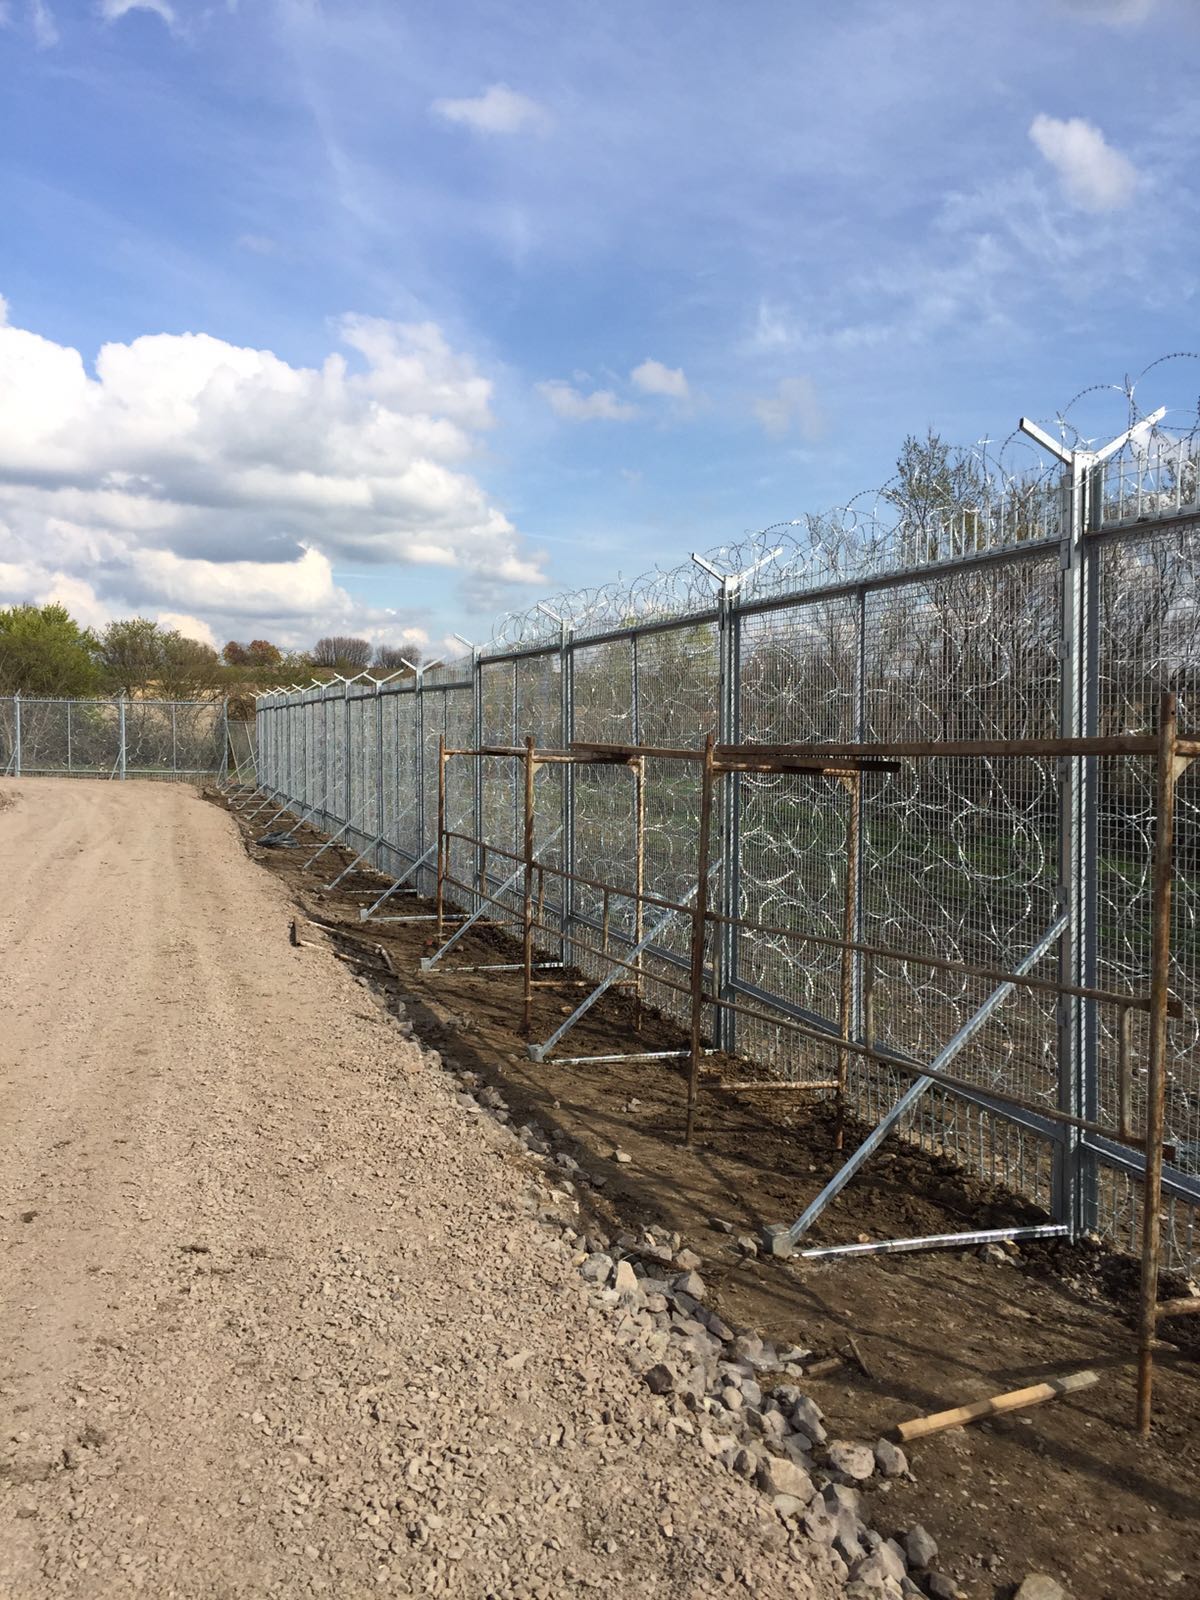 Цветан Цветанов: Правителството прави всичко за ограничаване на бежанския поток (СНИМКИ)